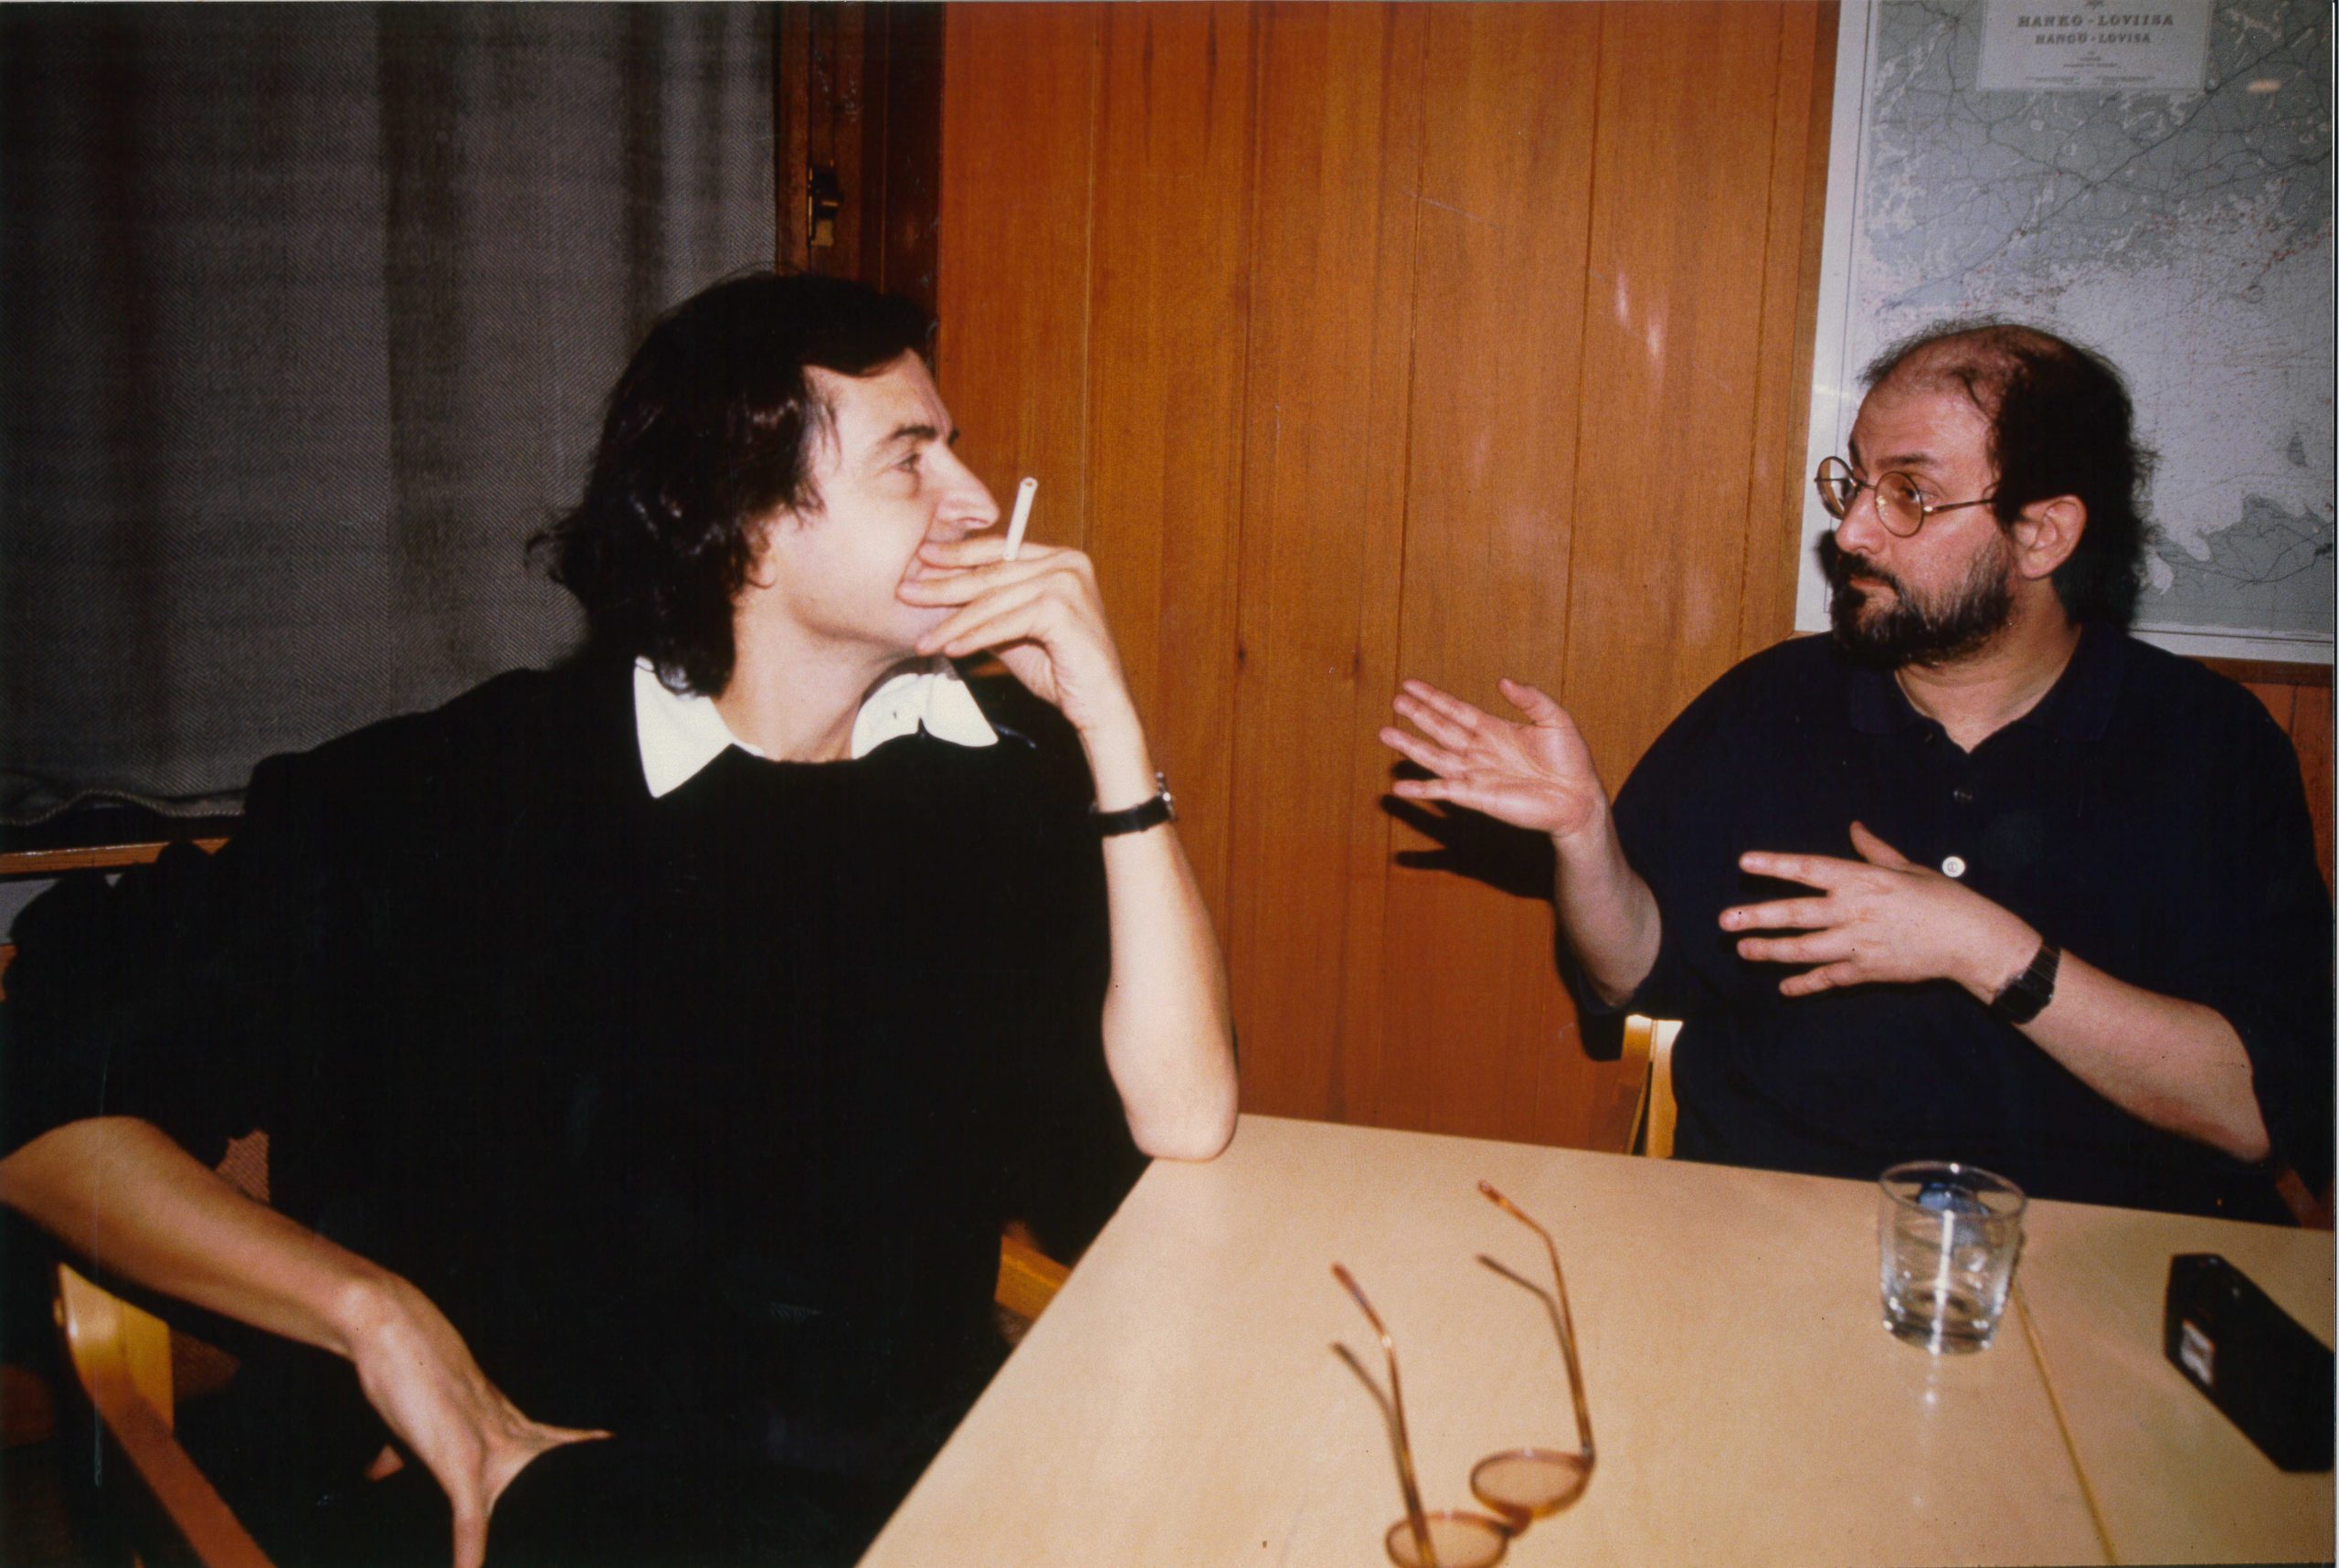 Bernard-Henri Lévy and Salman Rushdie.